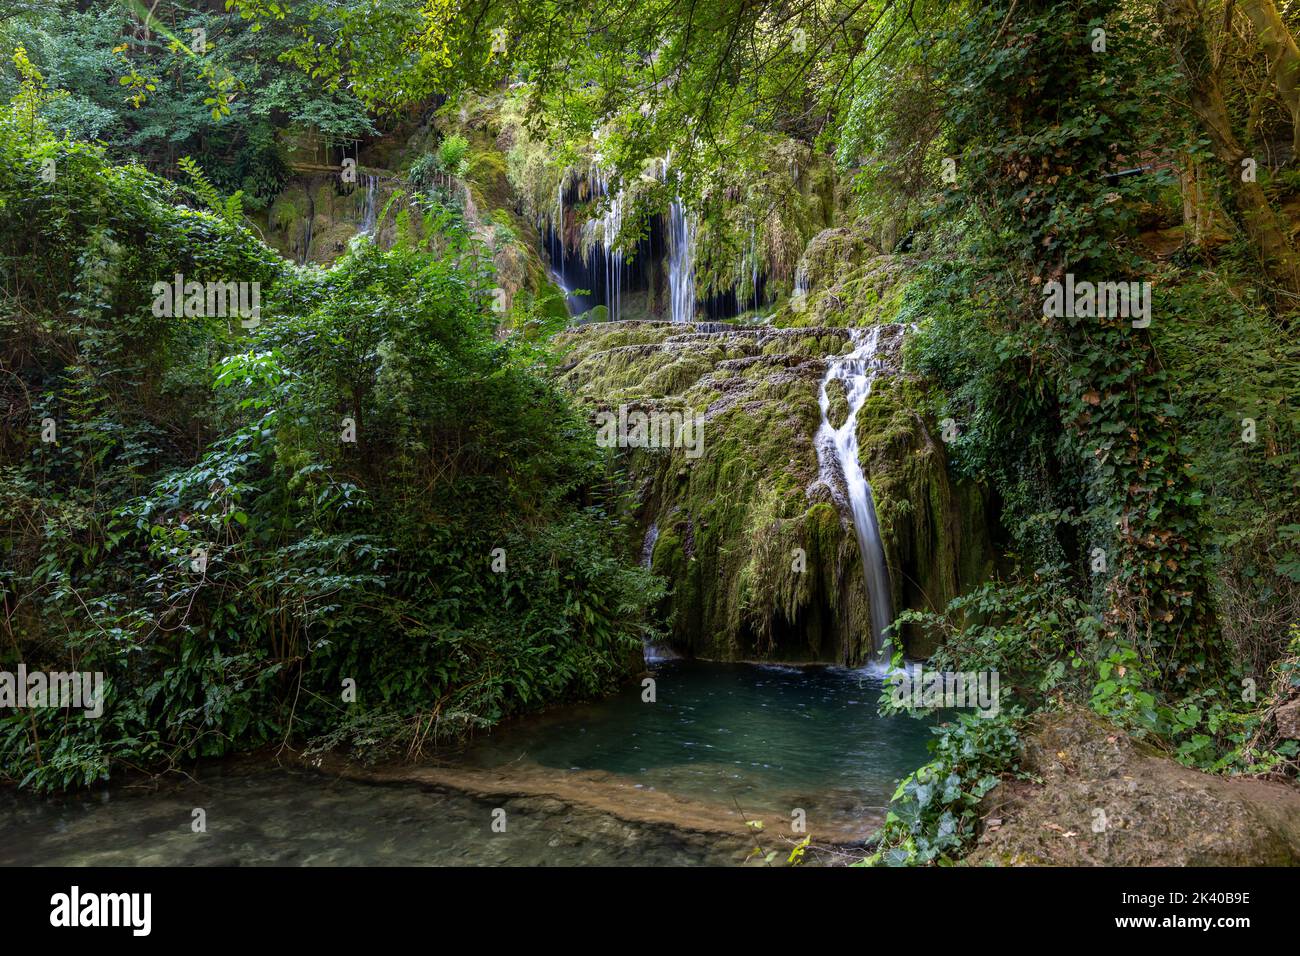 Les incroyables cascades de Krushunski avec des eaux turquoises et de la mousse verte. Situé près de la ville de Lovech en Bulgarie Banque D'Images